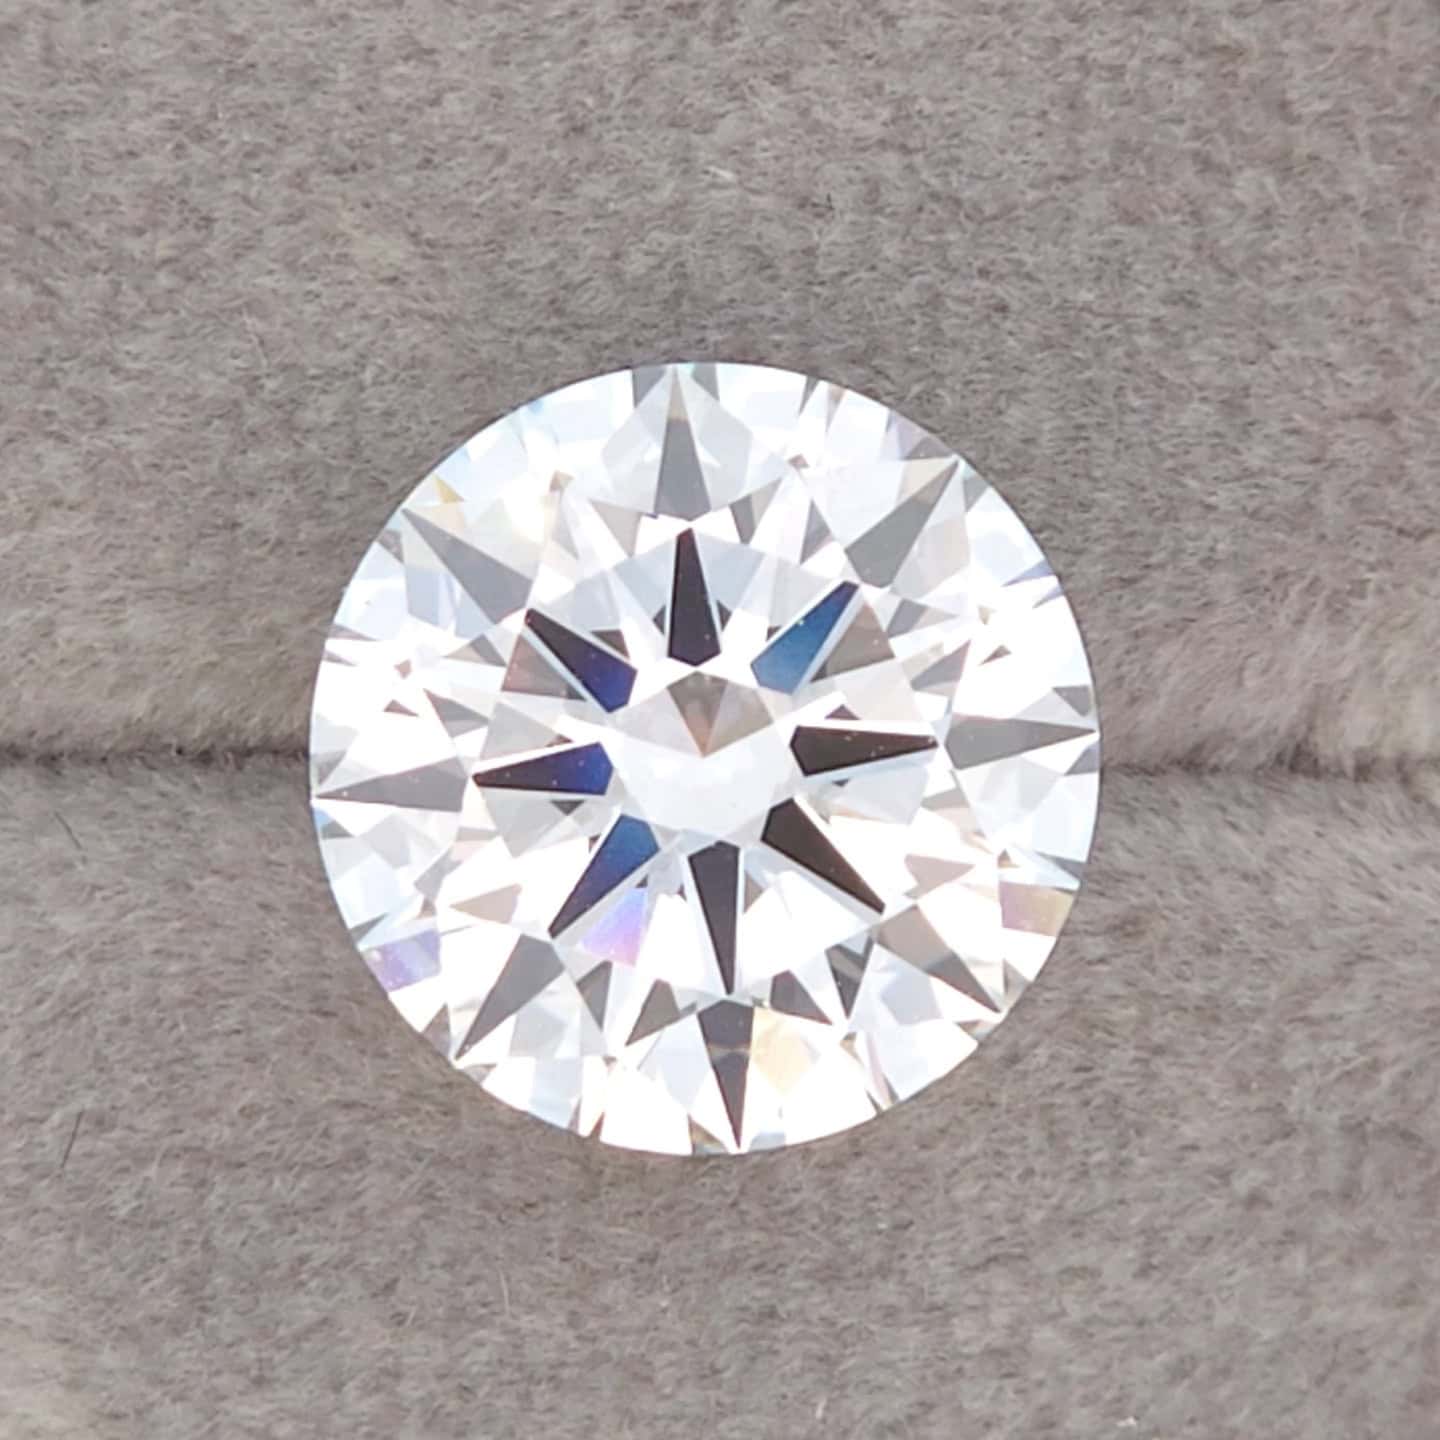 Lowest Price Eco Diamond - 3.25 ct Round D-VVS2 IGI LG627424748 - Excellent symmetry, Excellent polish.